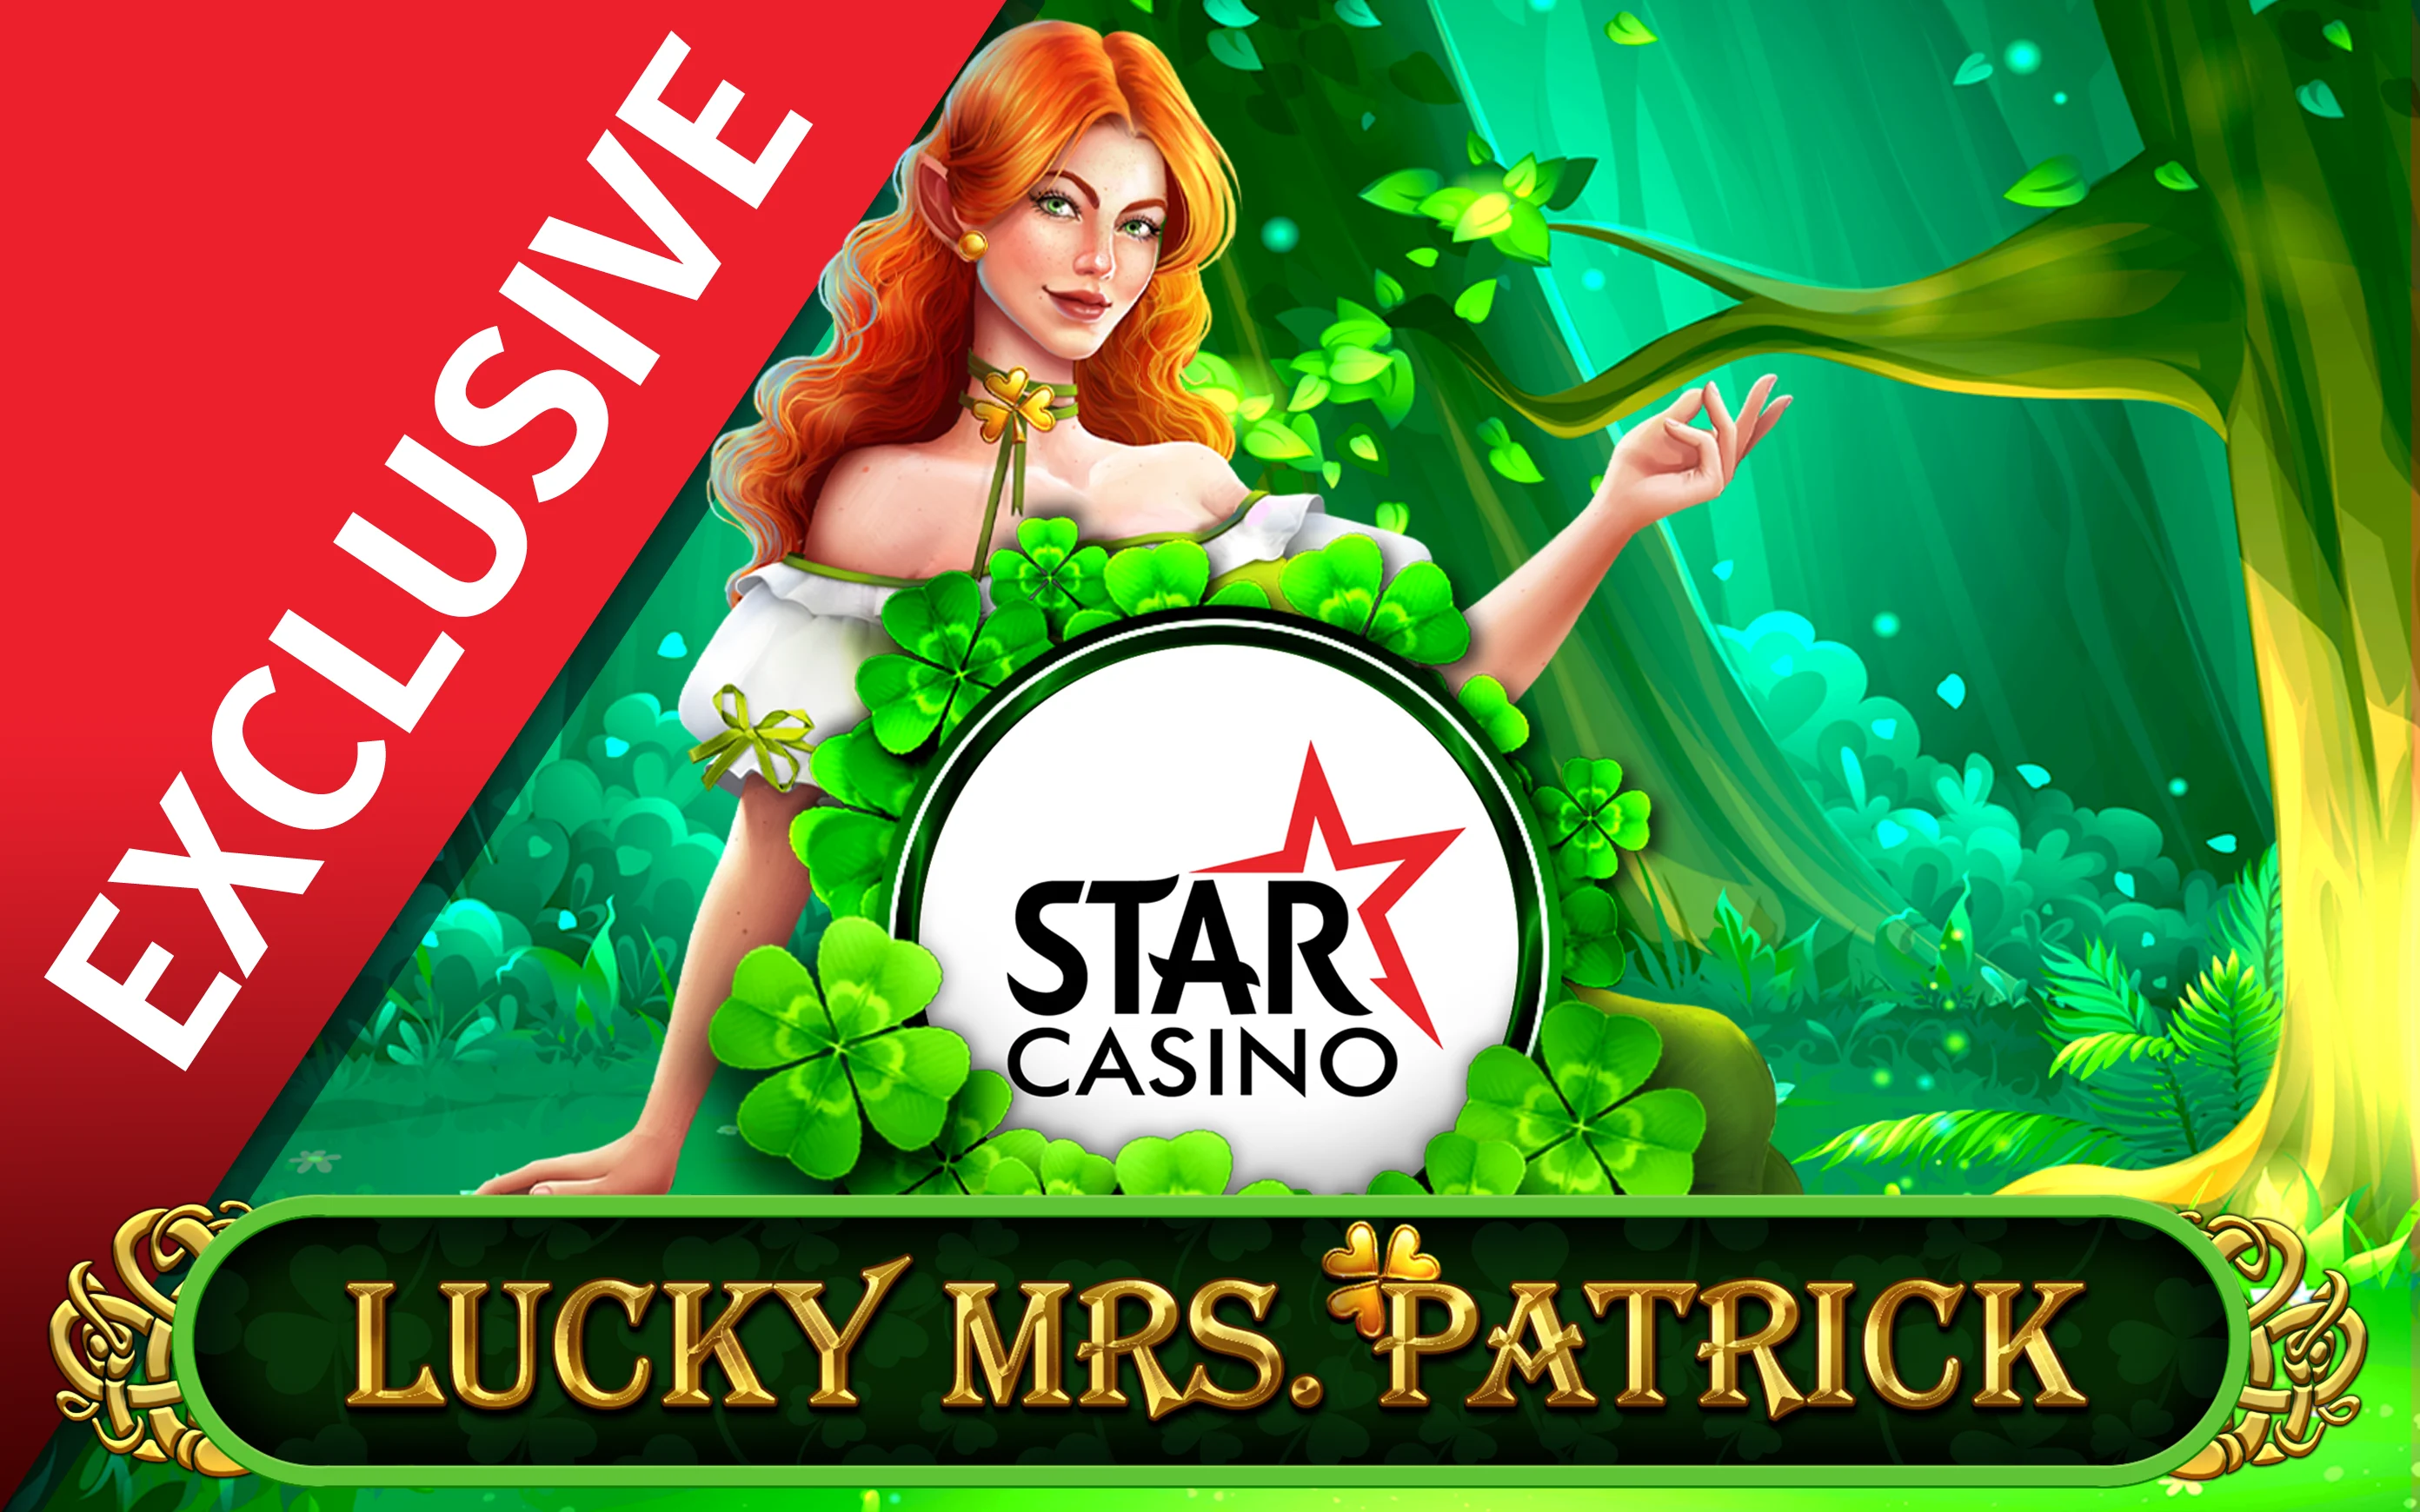 Play Starcasino Lucky Mrs Patrick on Starcasino.be online casino